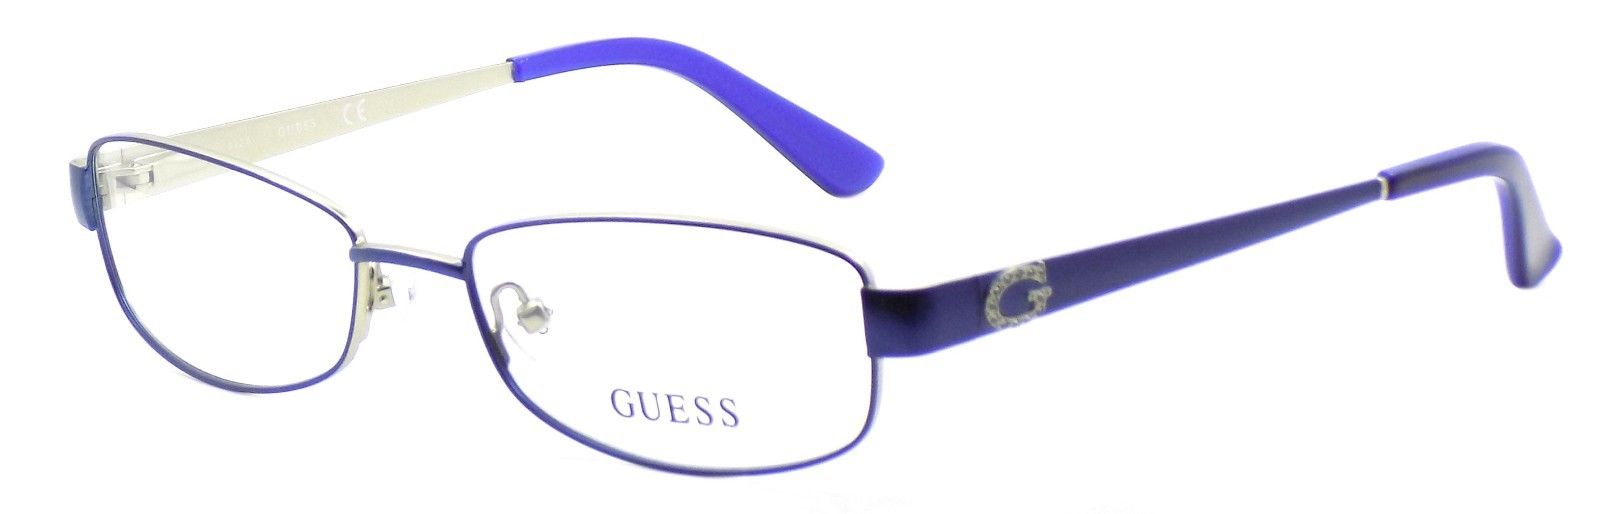 1-GUESS GU2569 091 Women's Eyeglasses Frames 53-17-135 Blue + CASE-664689783922-IKSpecs